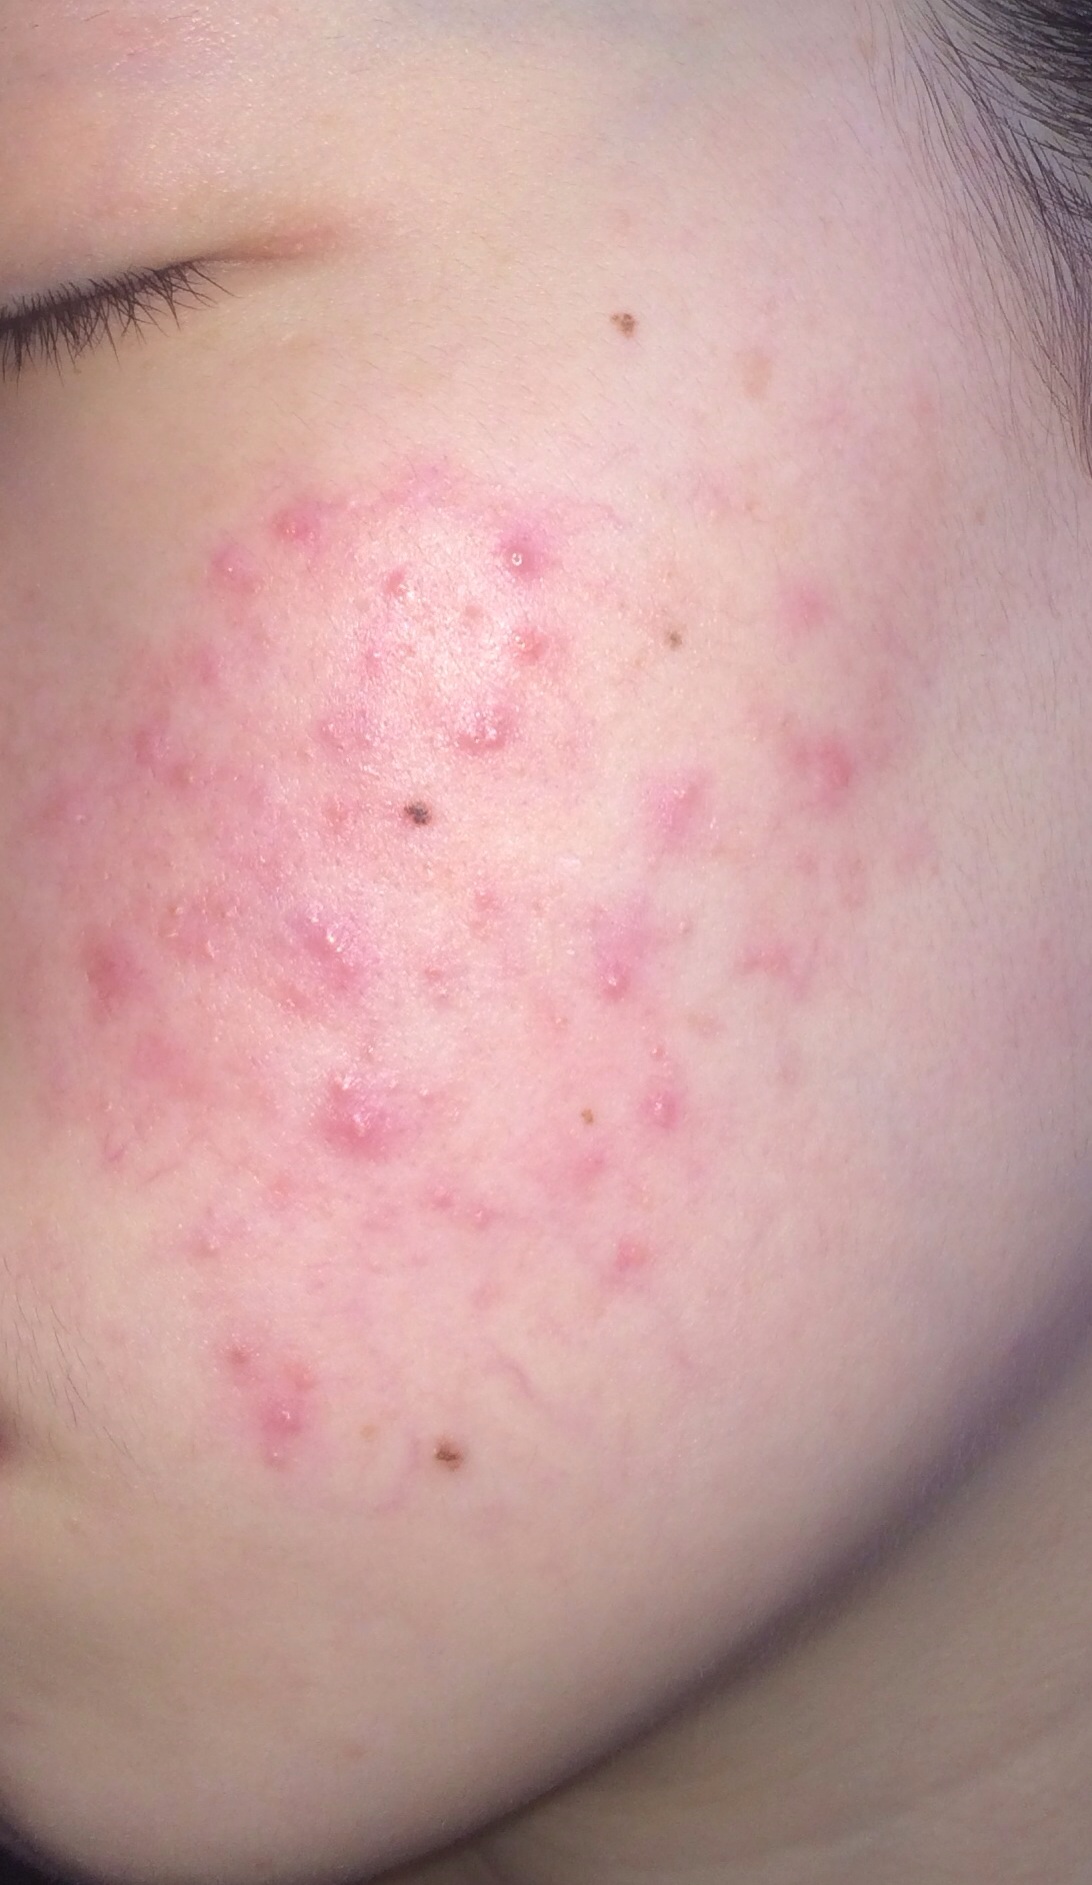 脸颊痘痘红红的,是微起的痘痘,摸上去不光滑,有半年的时间了